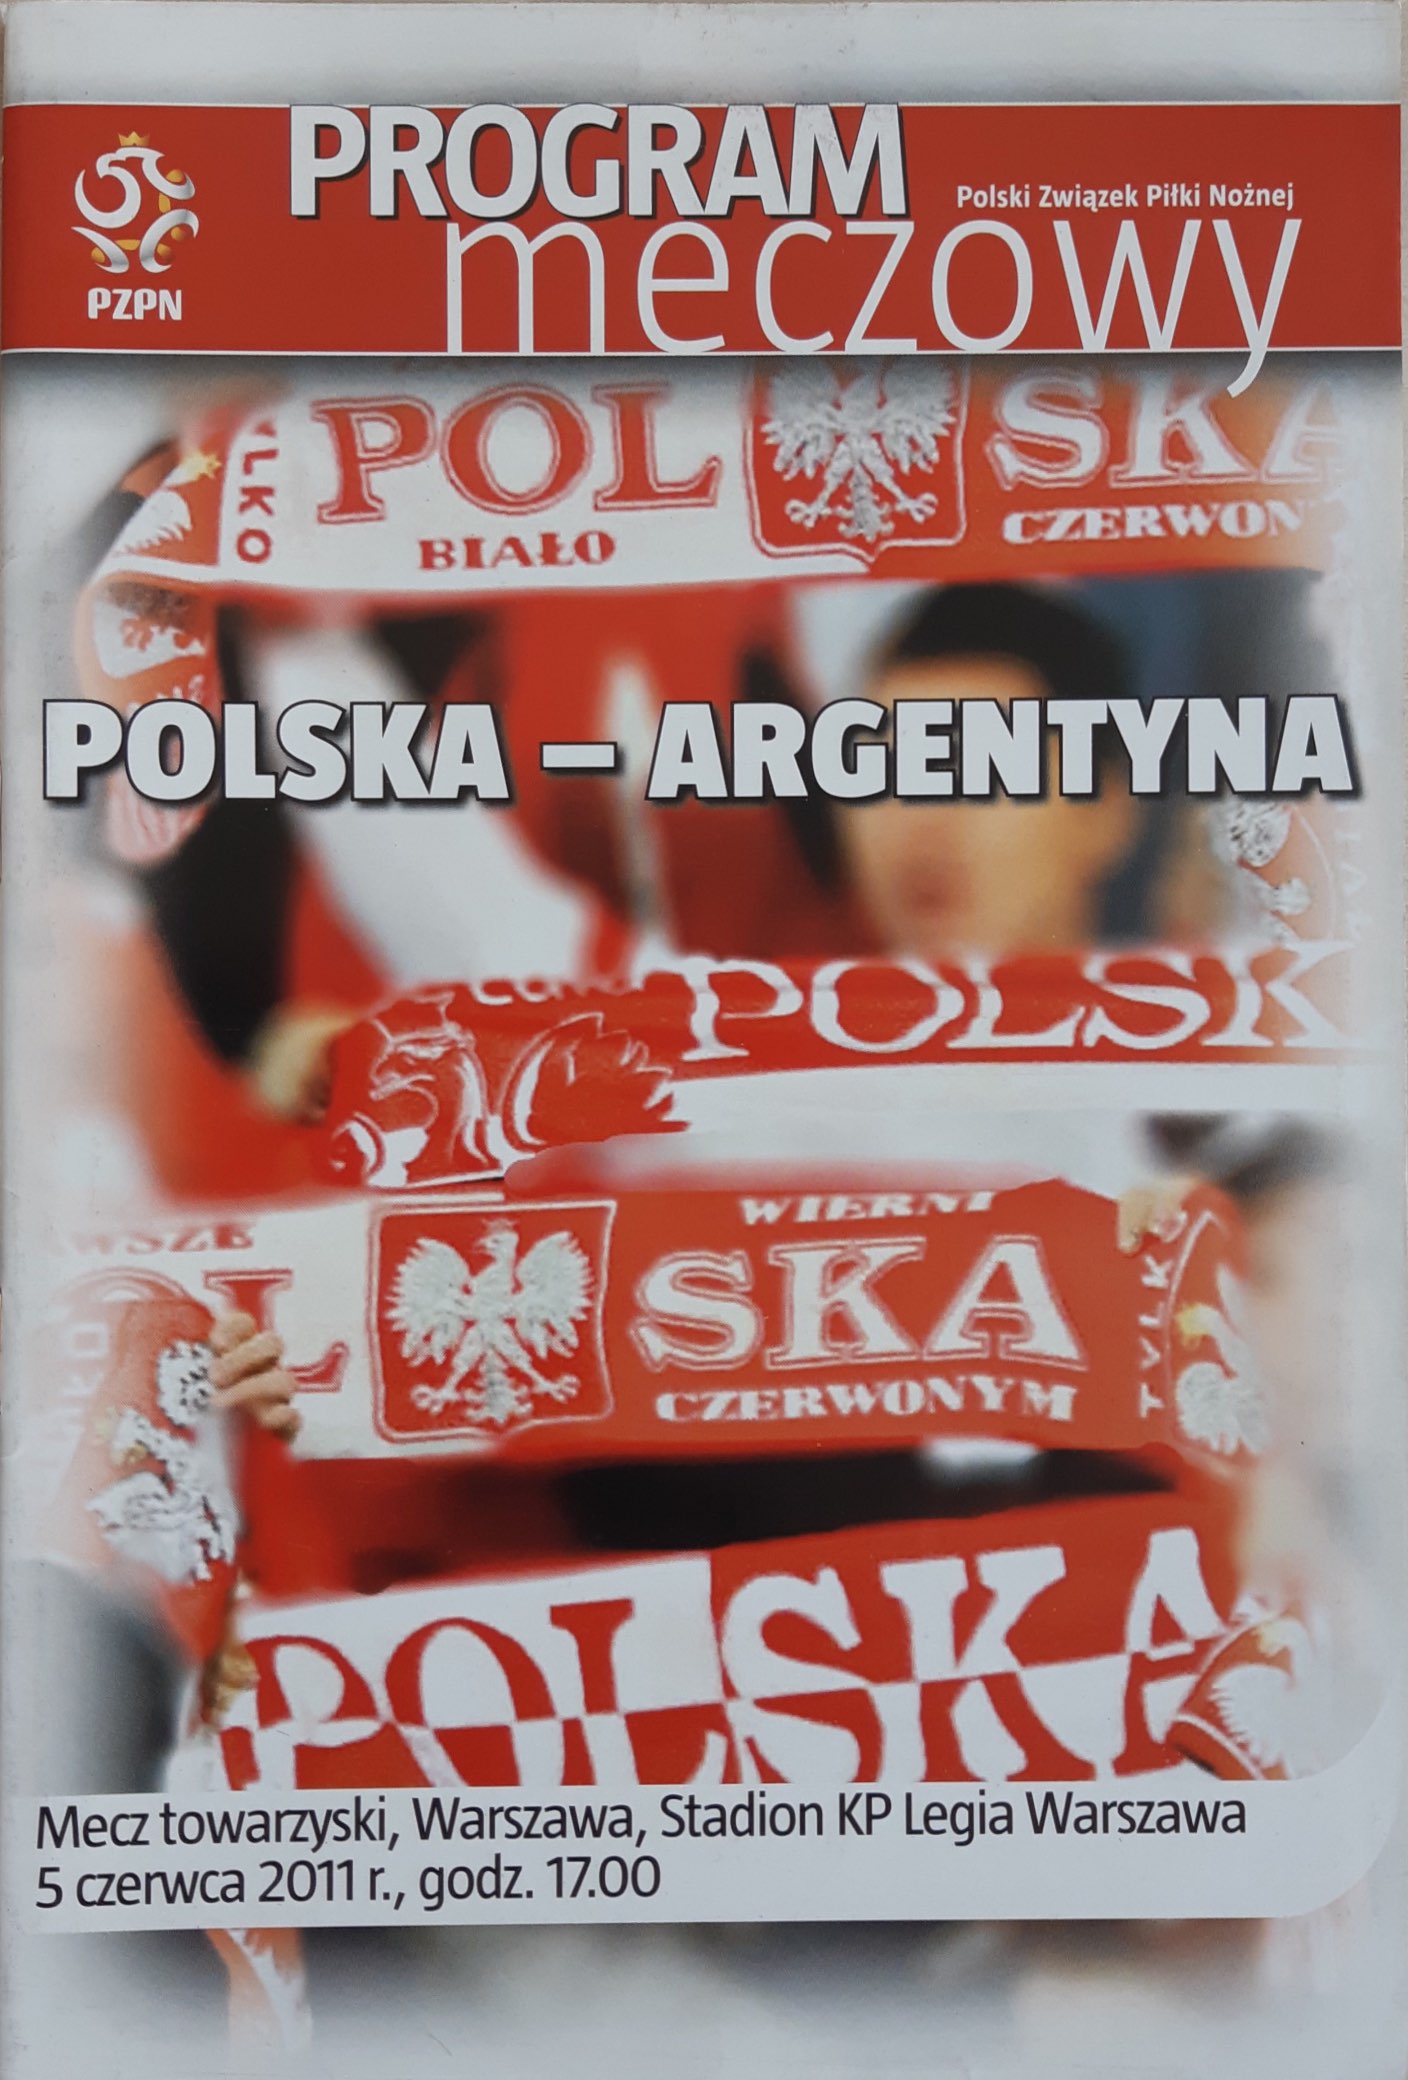 Program meczowy Polska - Argentyna 2:1 (05.06.2011).